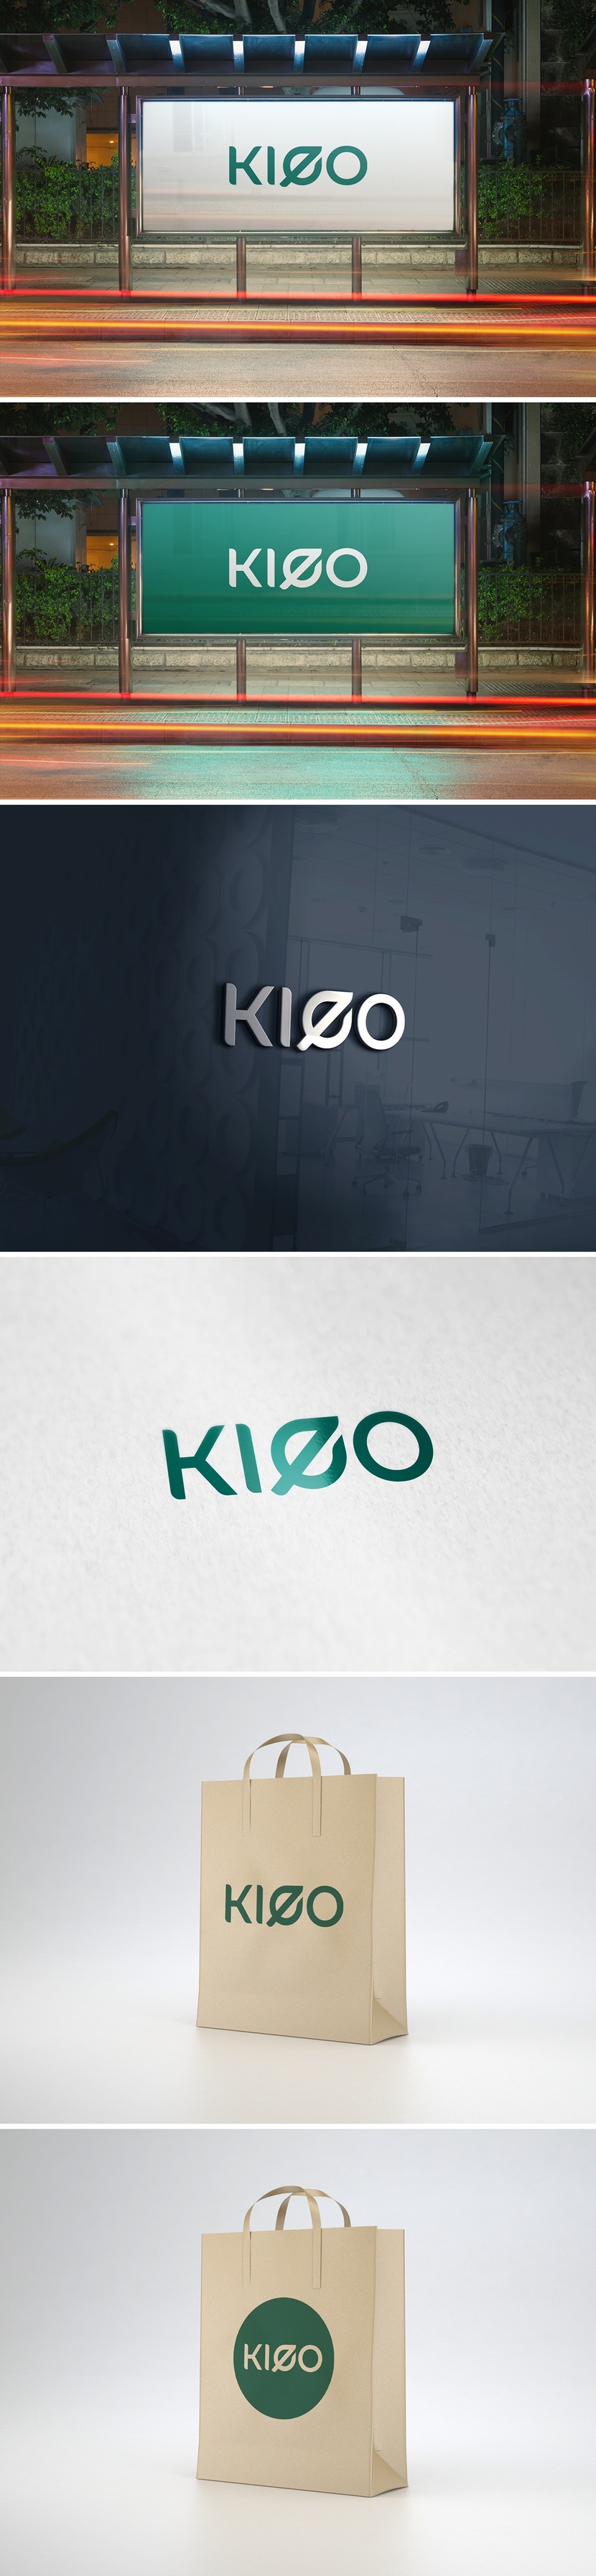 KLEO - Логотип и фирменный стиль для оптовика органических товаров для семьи и дома